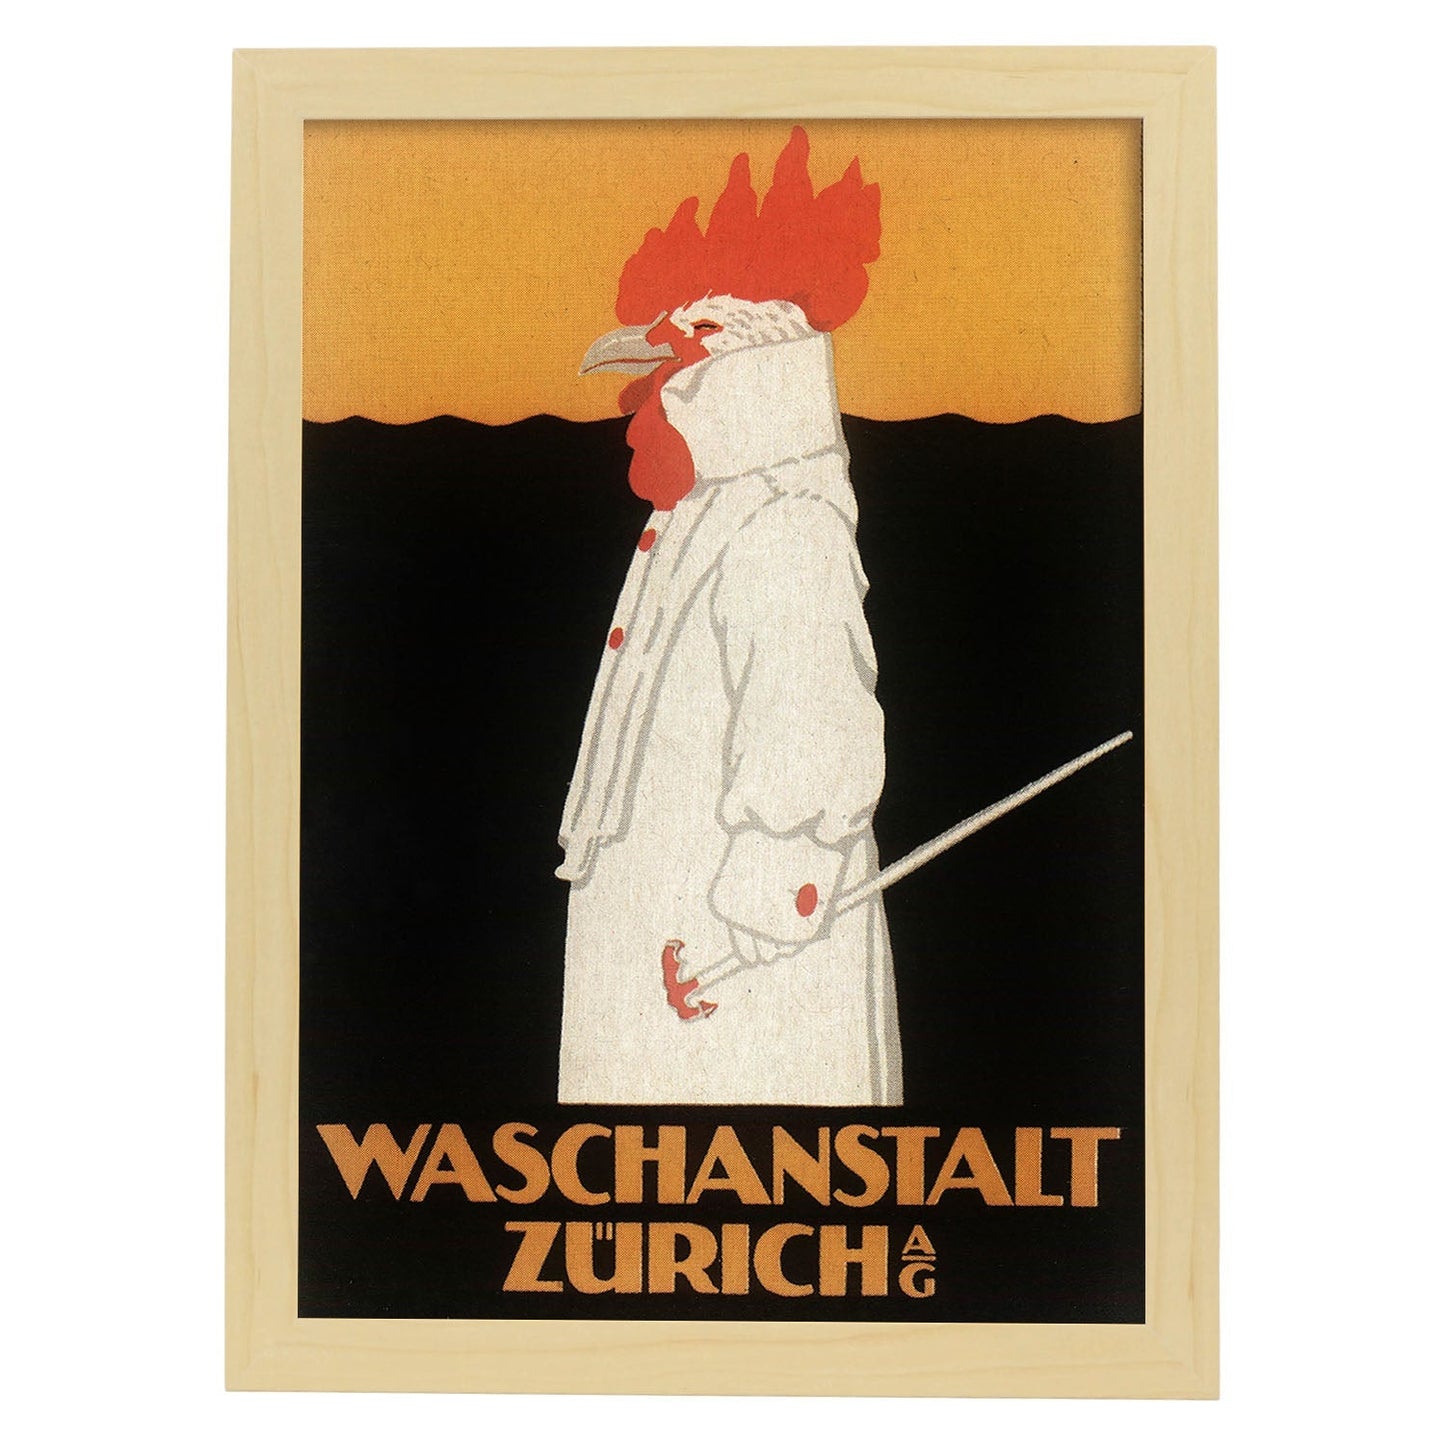 Poster vintage. Anuncio vintage Waschanstalt Zurich de 1905.-Artwork-Nacnic-A3-Marco Madera clara-Nacnic Estudio SL